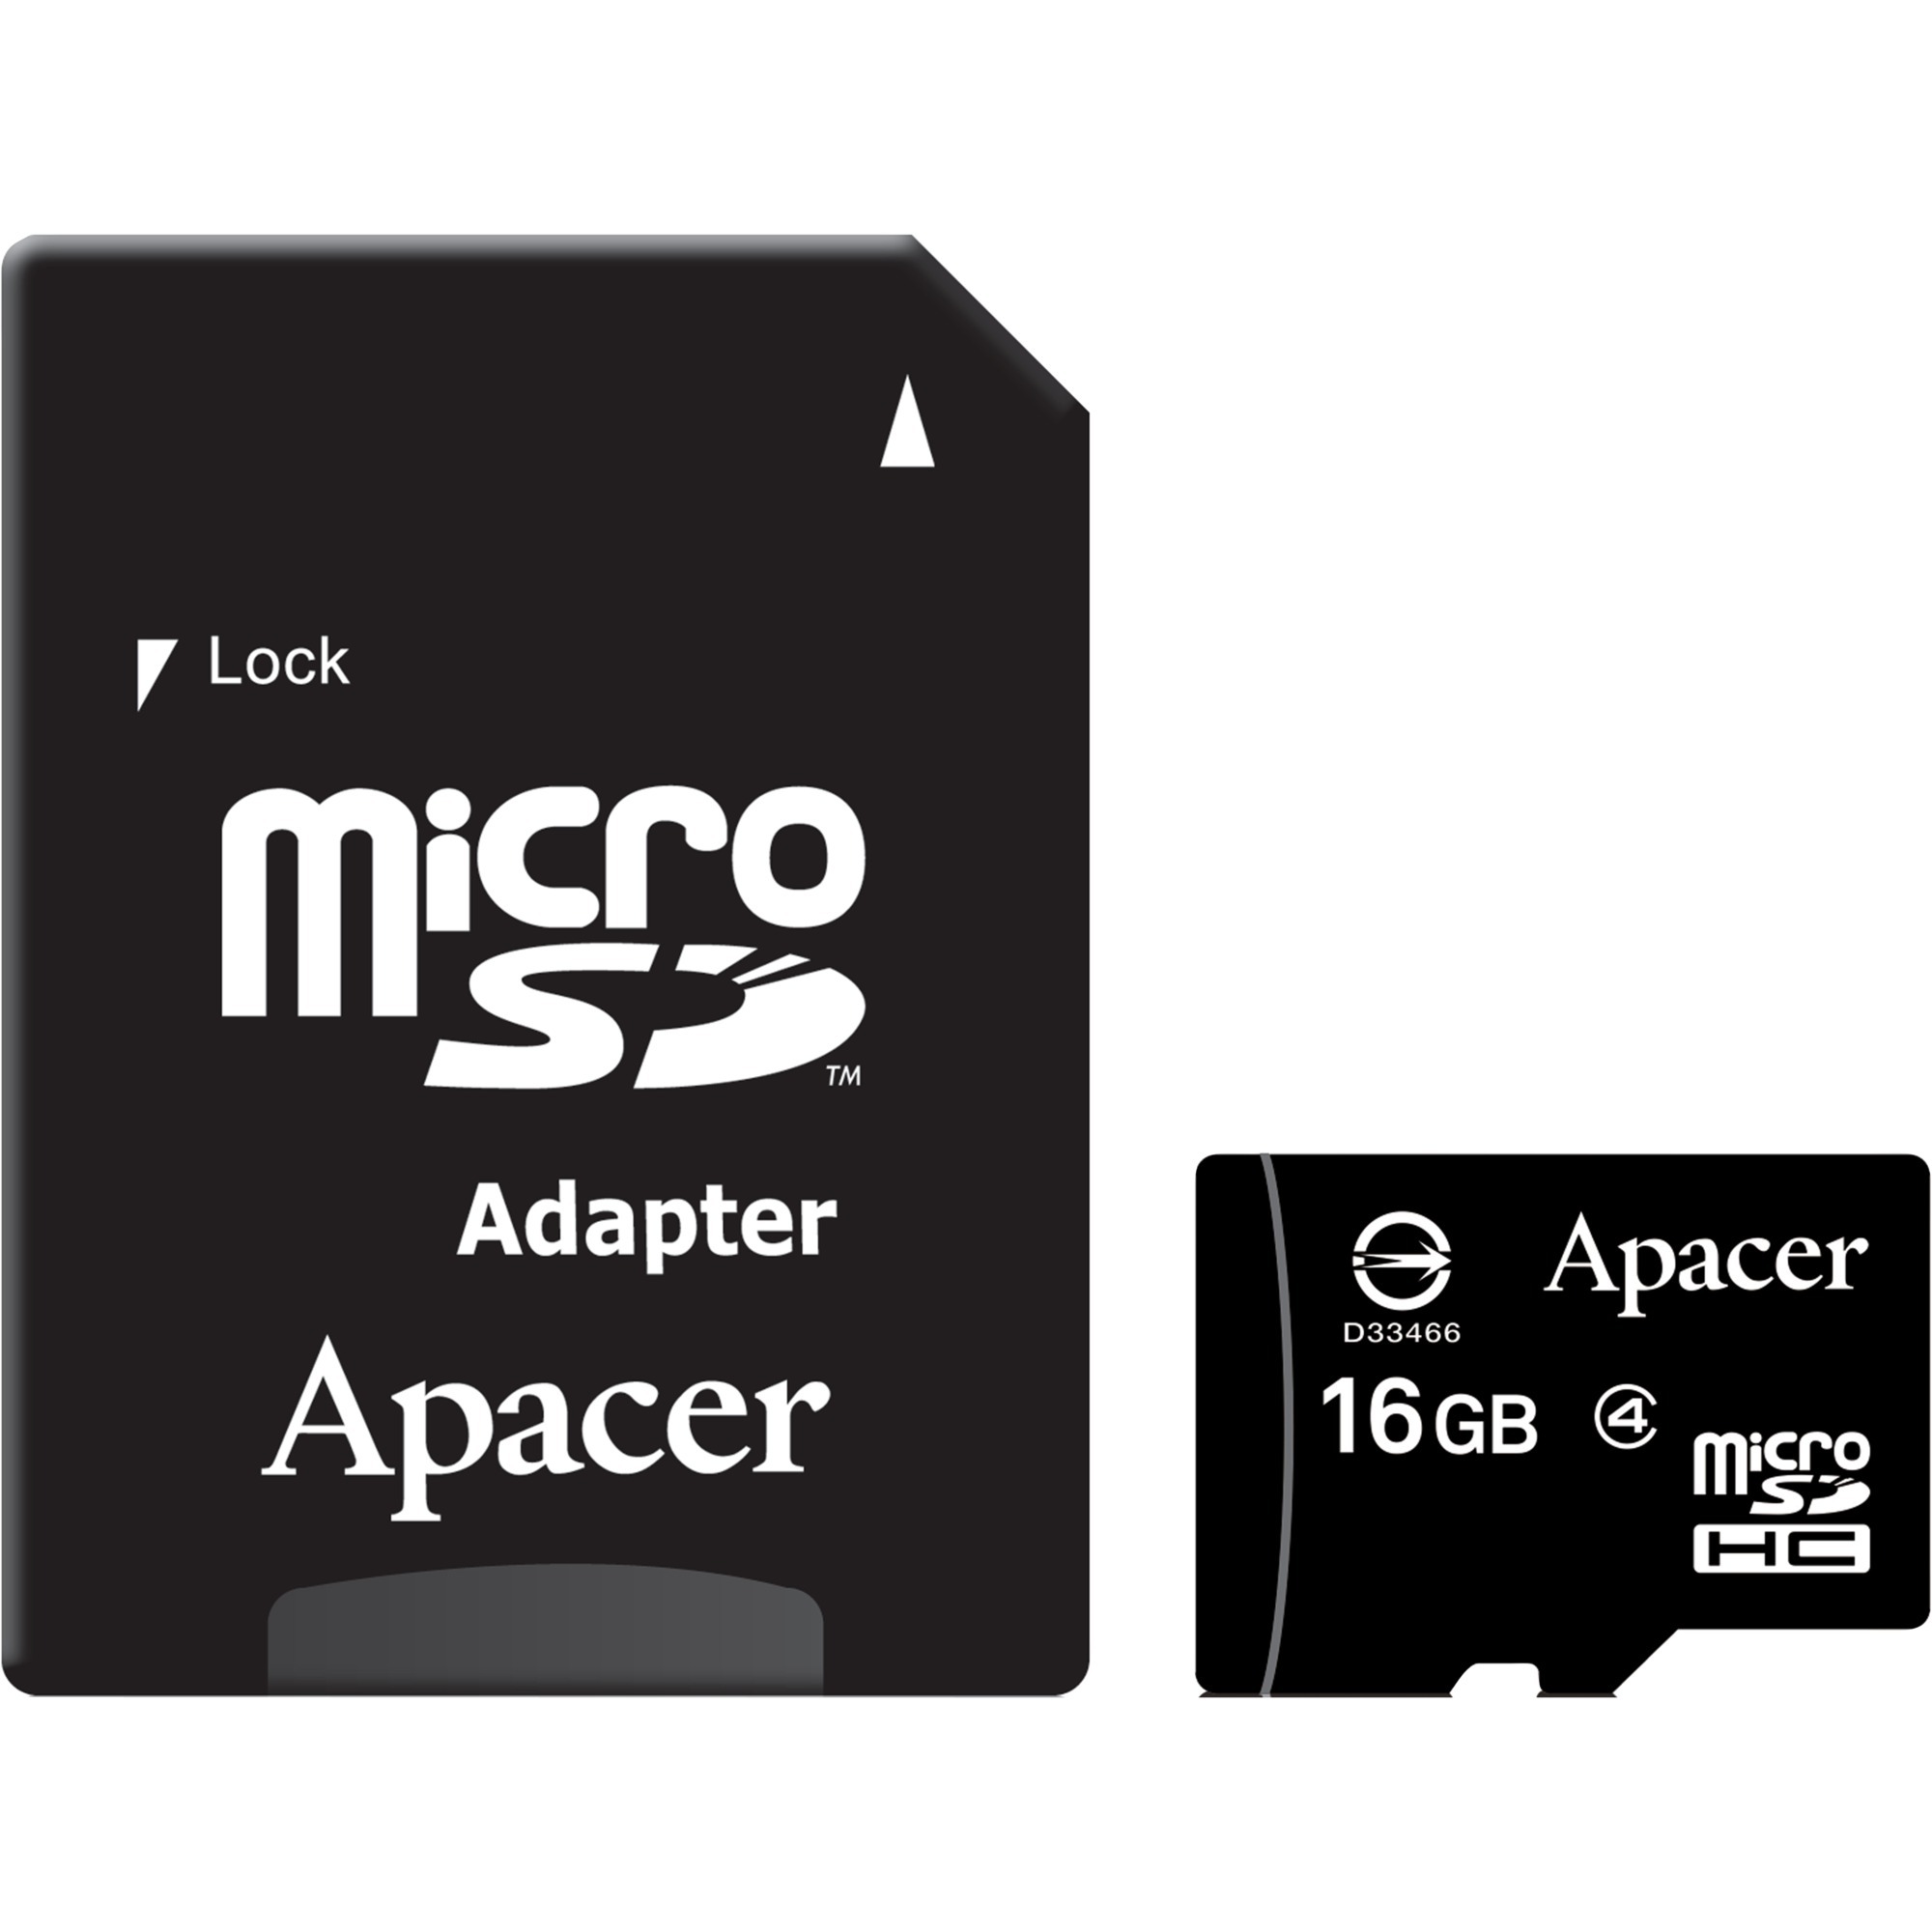 16GB microSDHC Dual Card pamięć flash SDHC, Karty pamięci